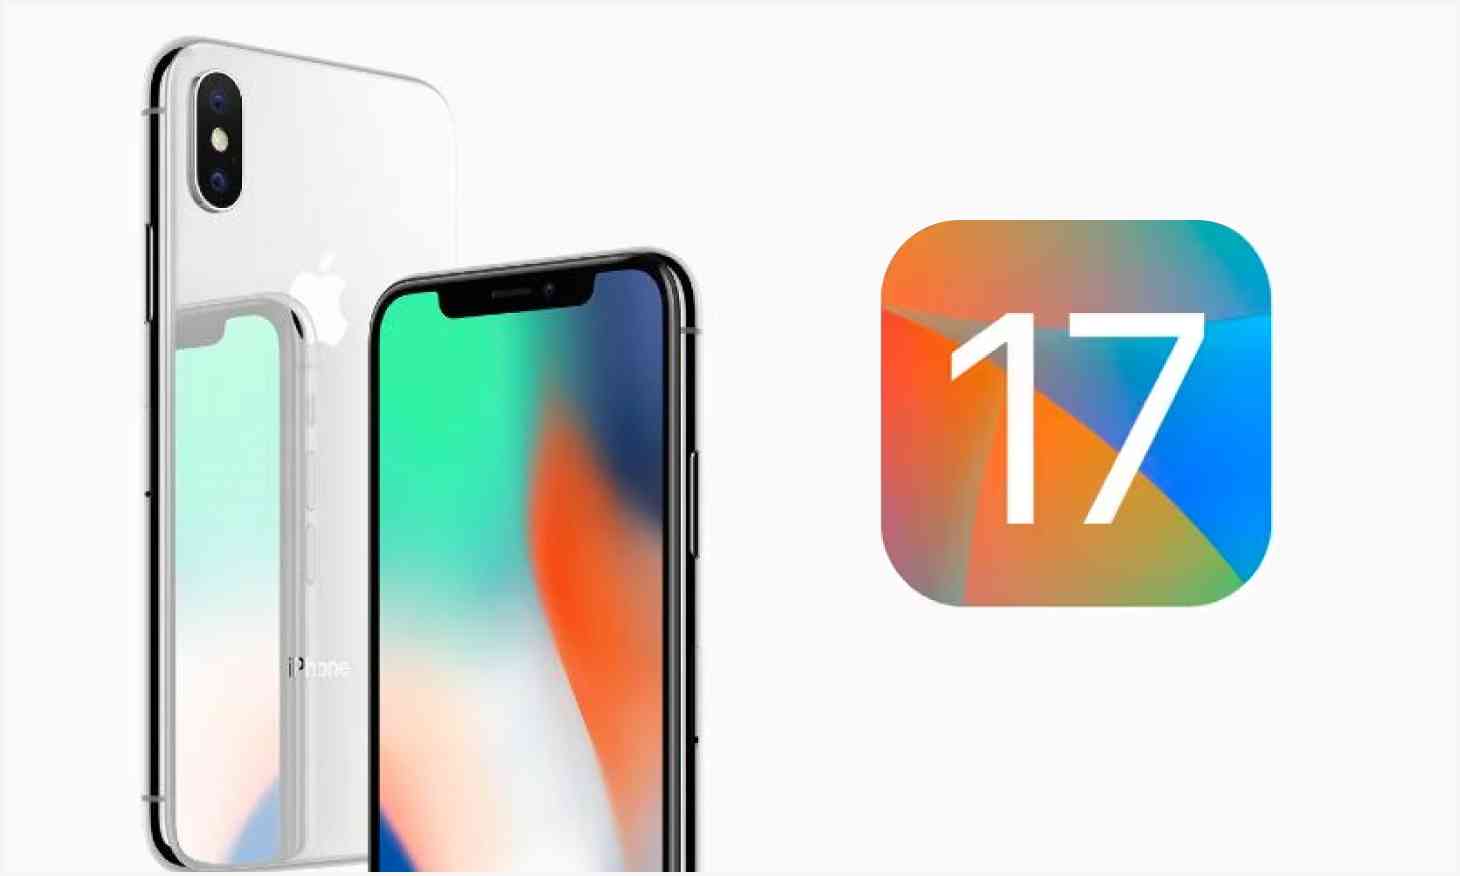 Presentación de iOS 17: ¿el iPhone X tendrá iOS 17?